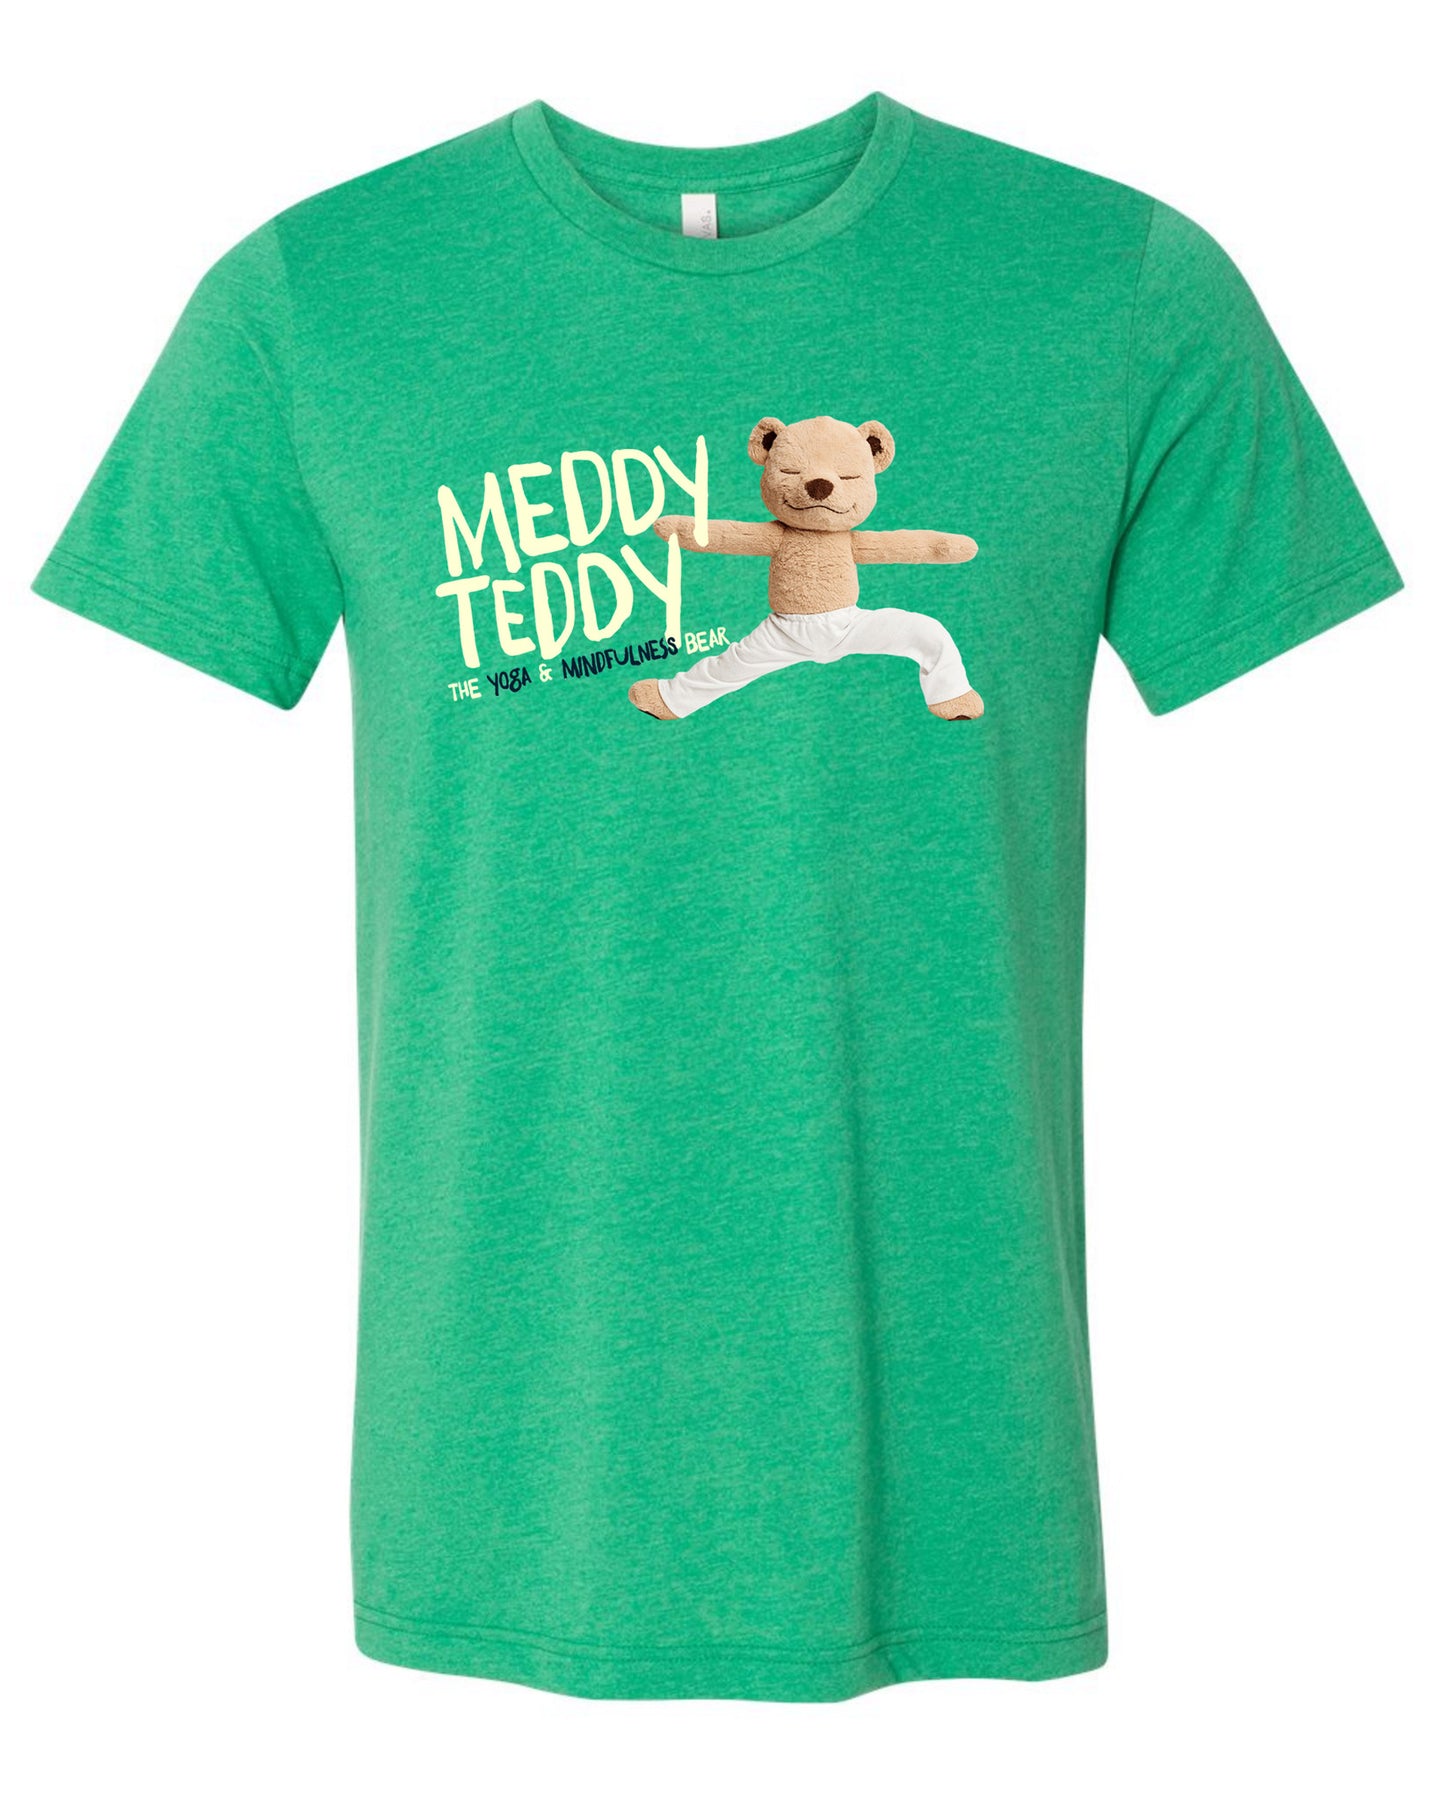 Meddy Teddy - Youth Tee (Green)